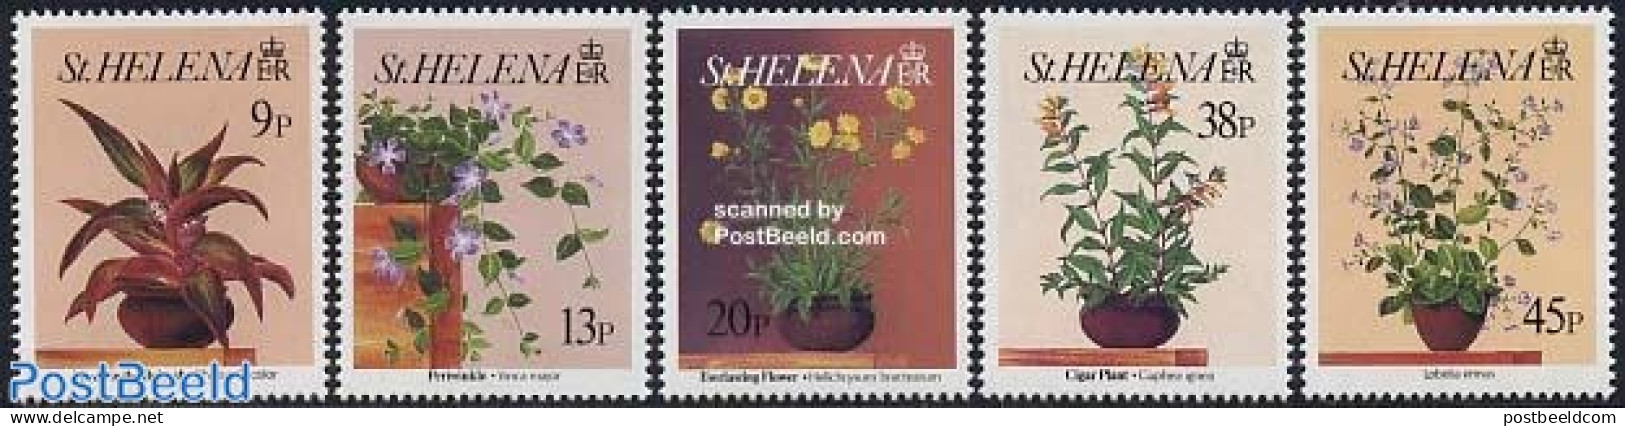 Saint Helena 1993 Flowers 4v, Mint NH, Nature - Flowers & Plants - St. Helena